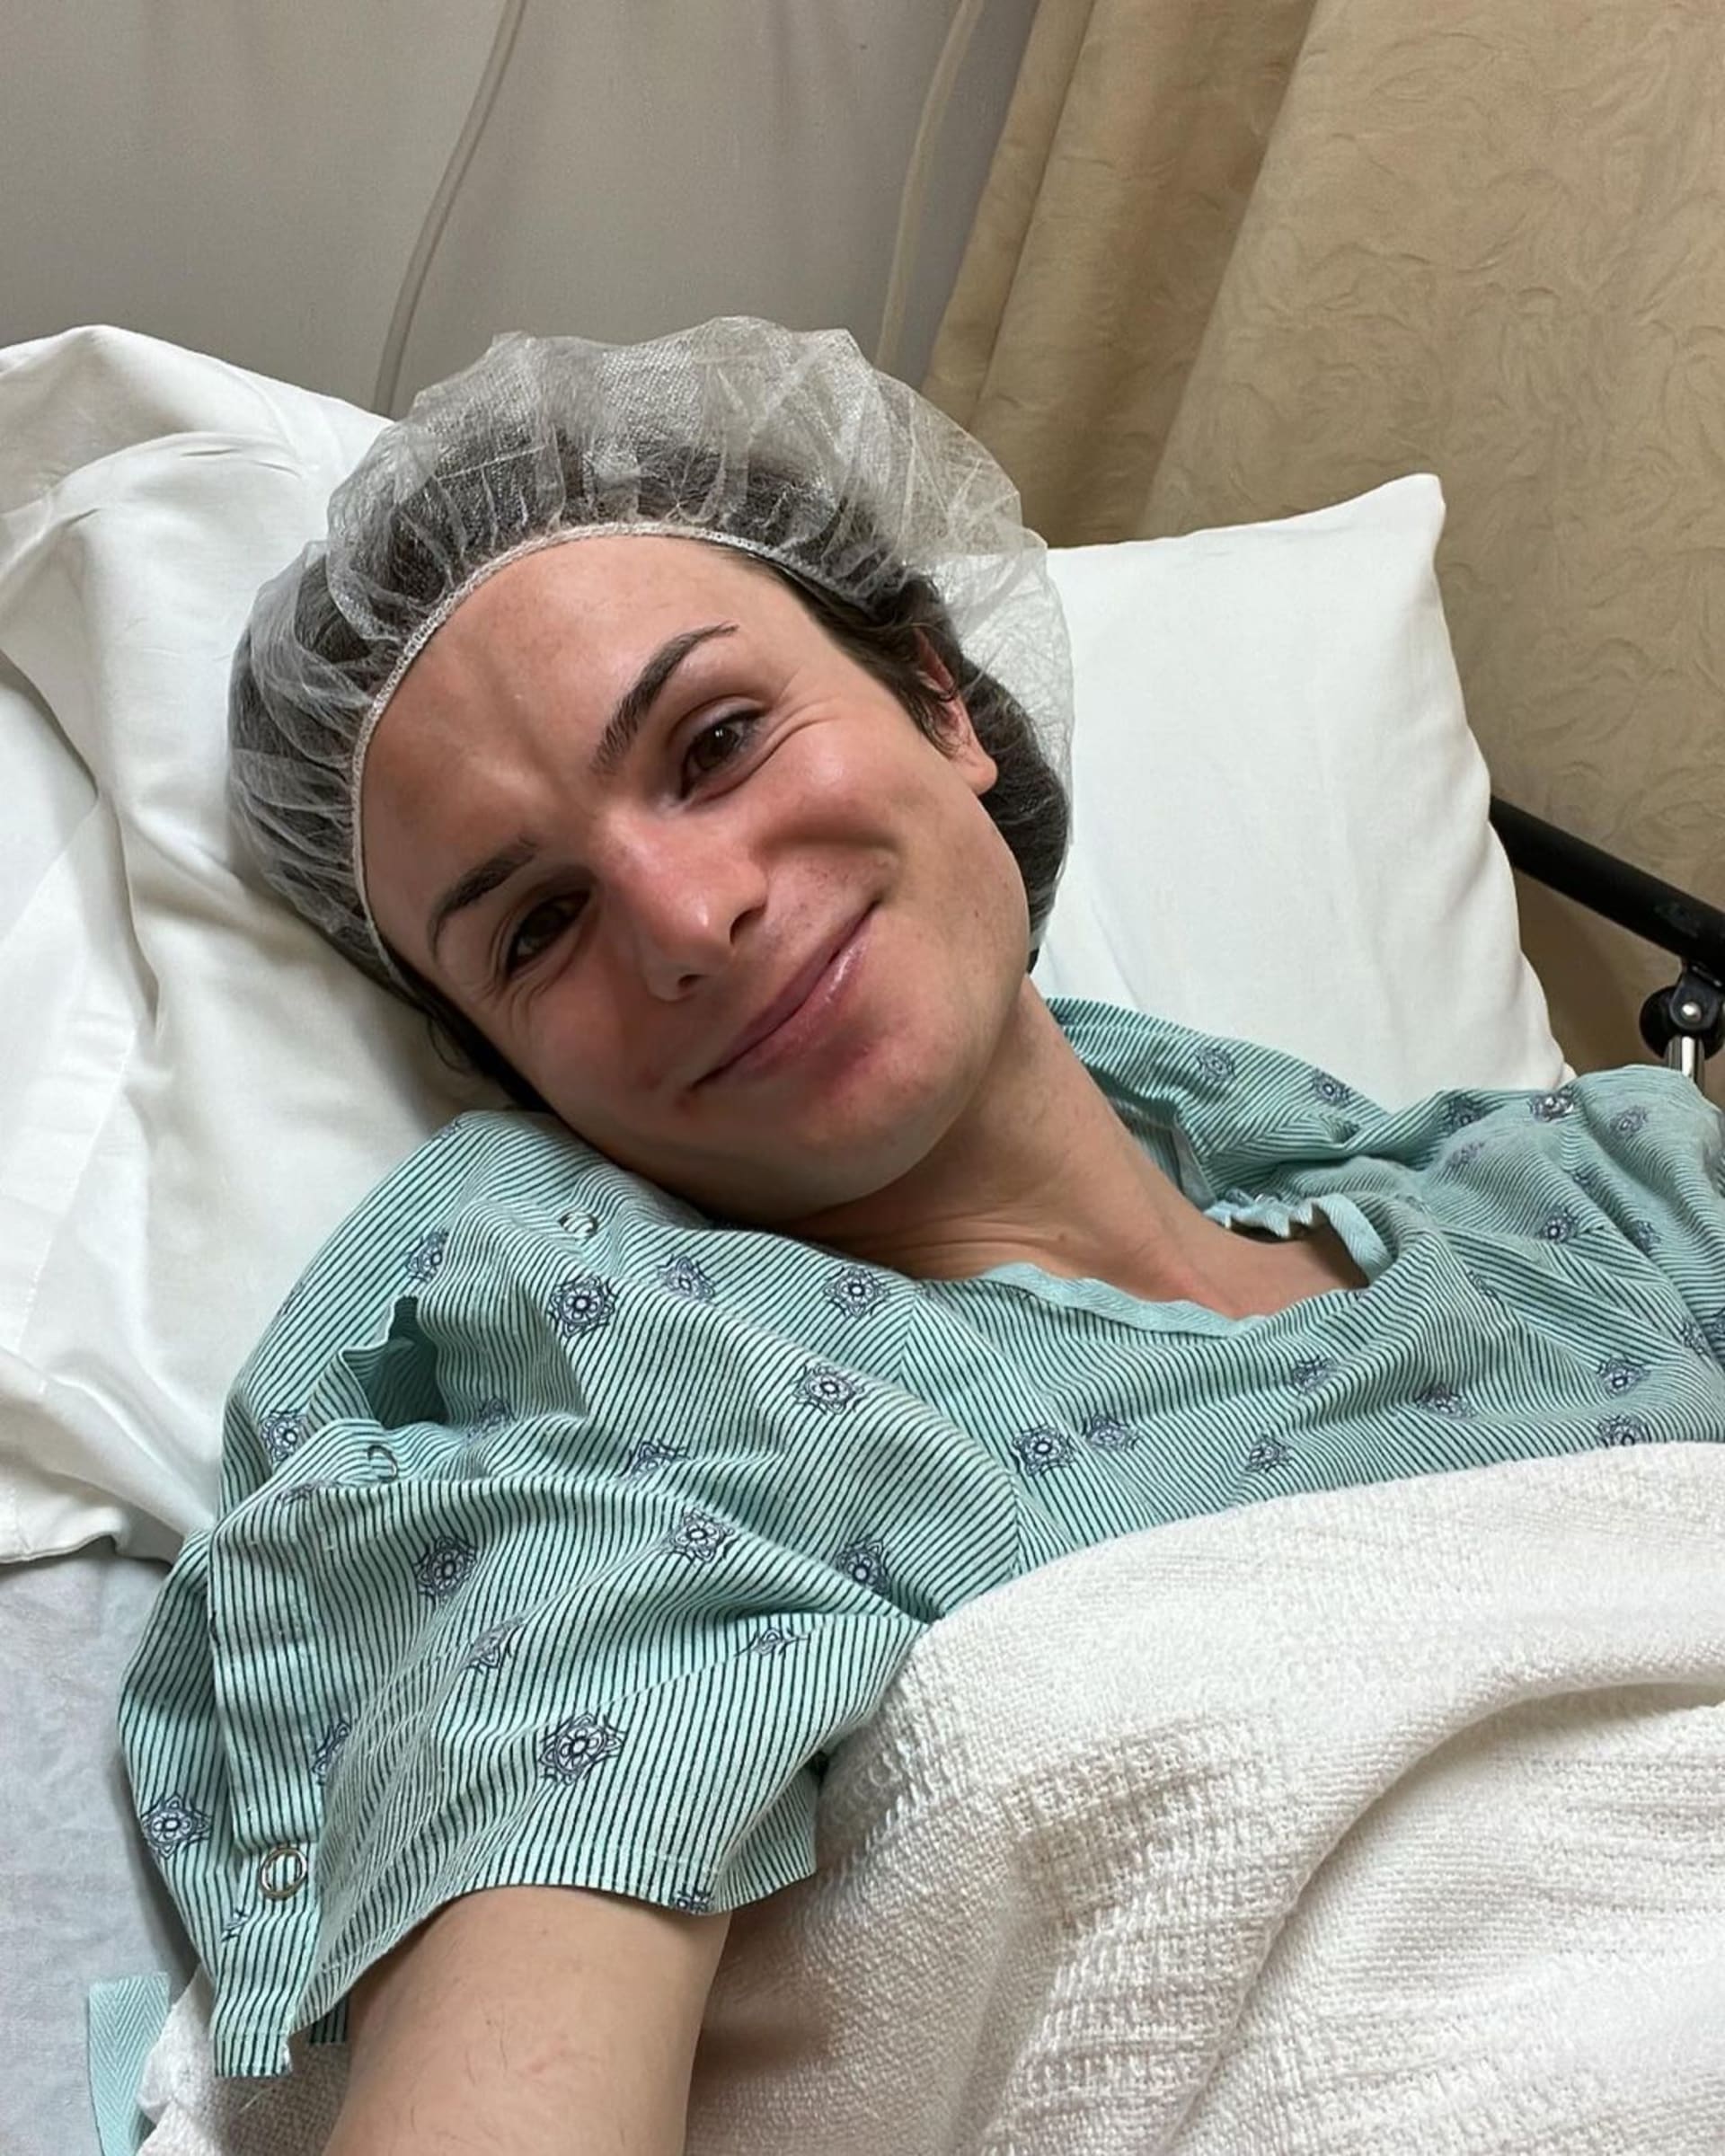 Koncem roku tiktokerka podstoupila feminizaci obličeje a sdílela poslední selfíčko před operací